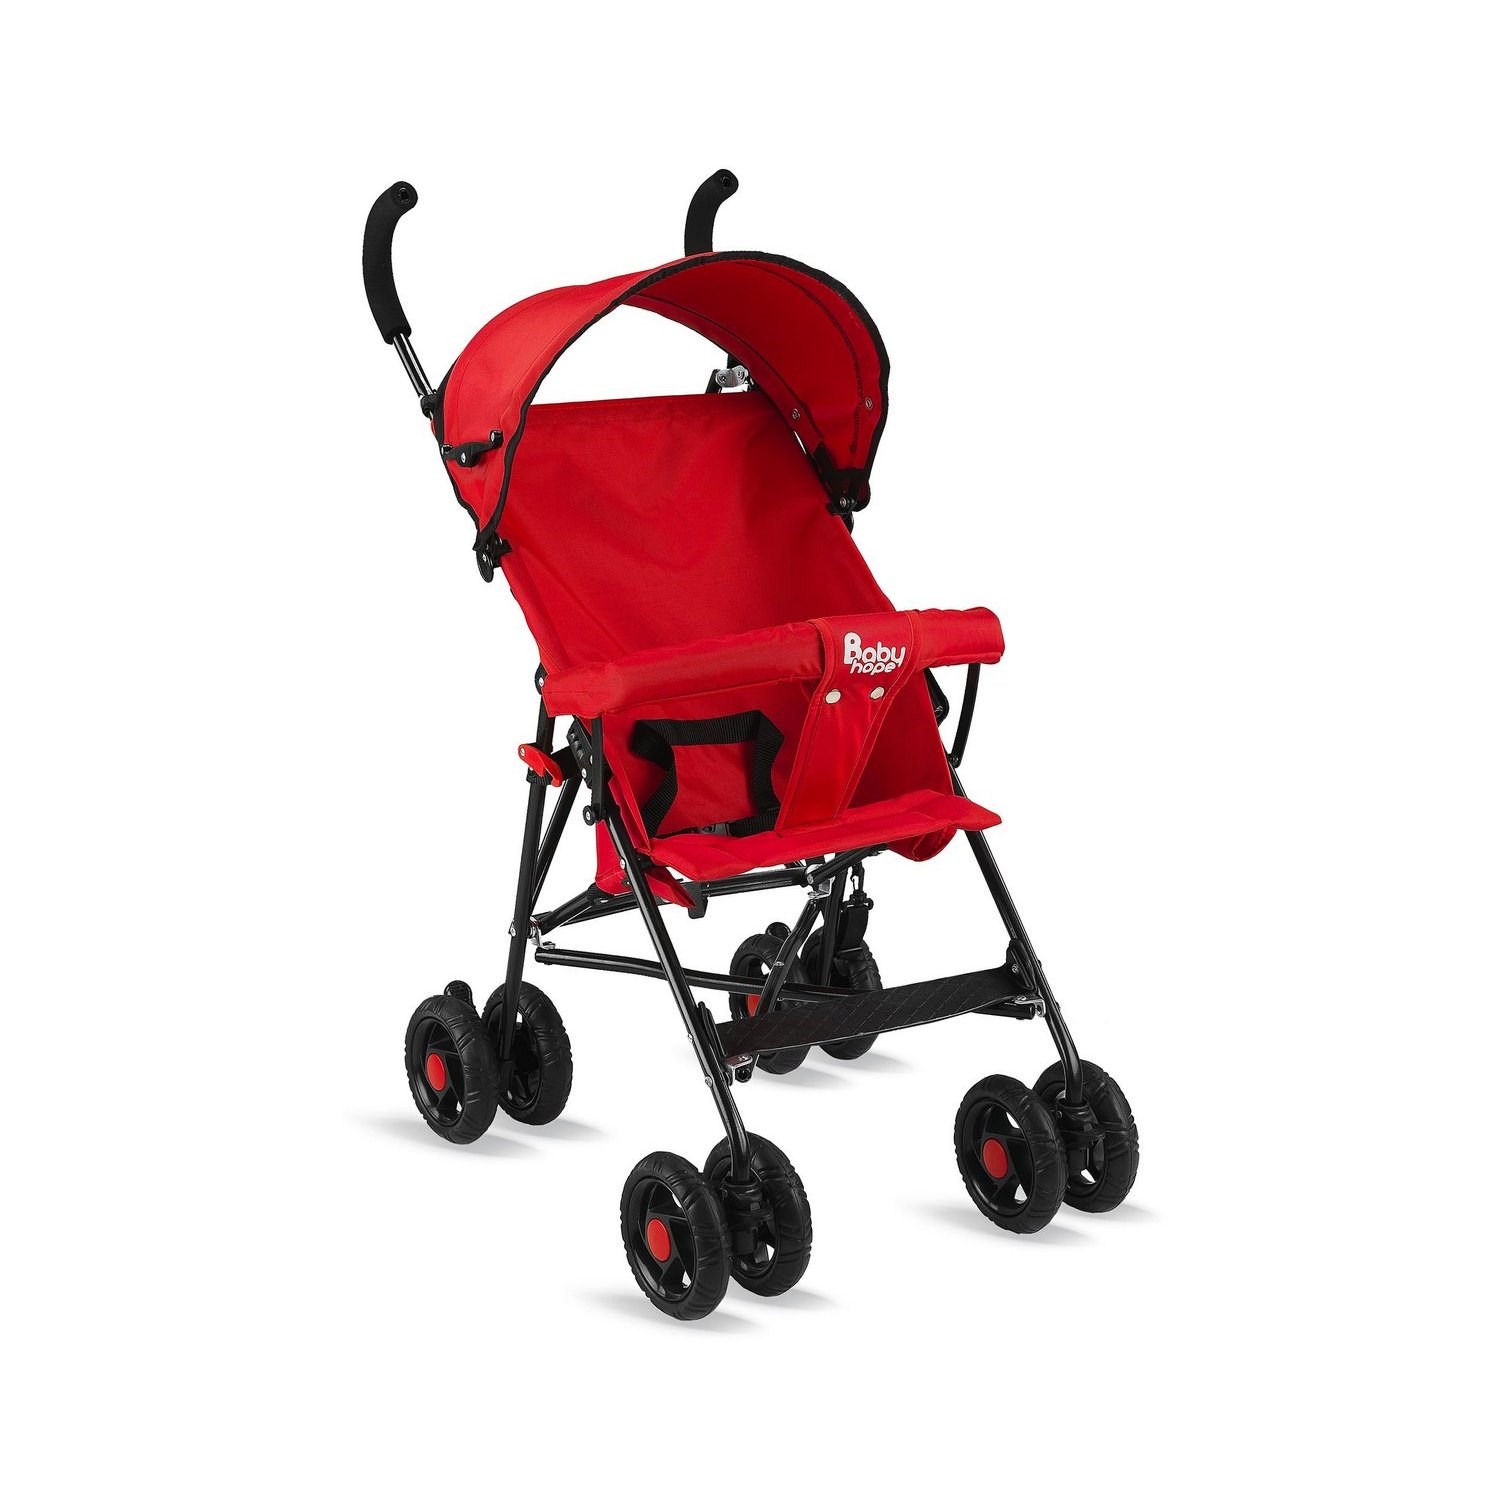 Babyhope SC 107 Baston Bebek Arabası Kırmızı